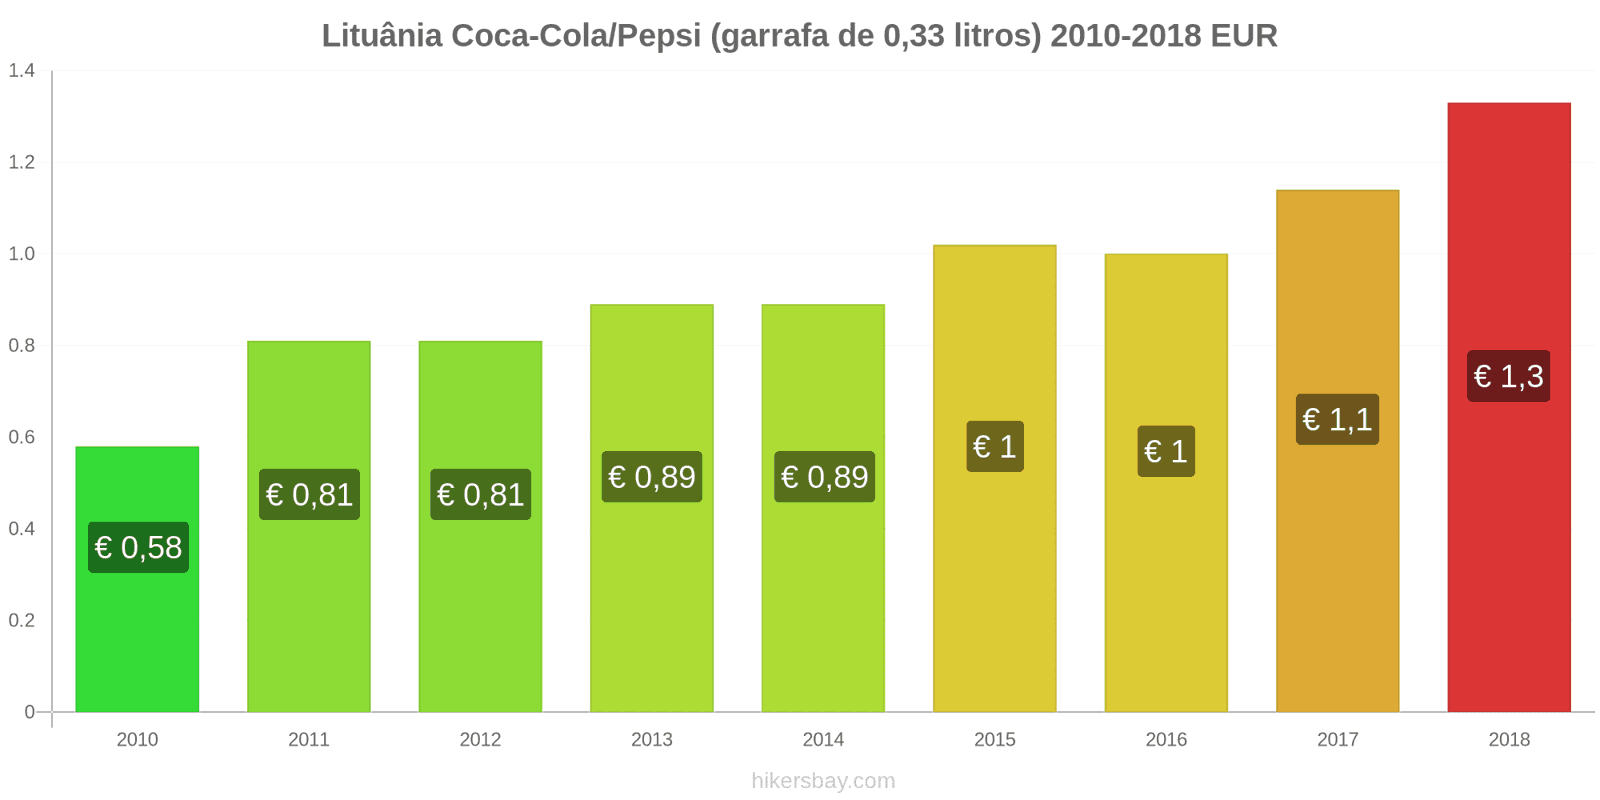 Lituânia mudanças de preços Coca-Cola/Pepsi (garrafa de 0.33 litros) hikersbay.com